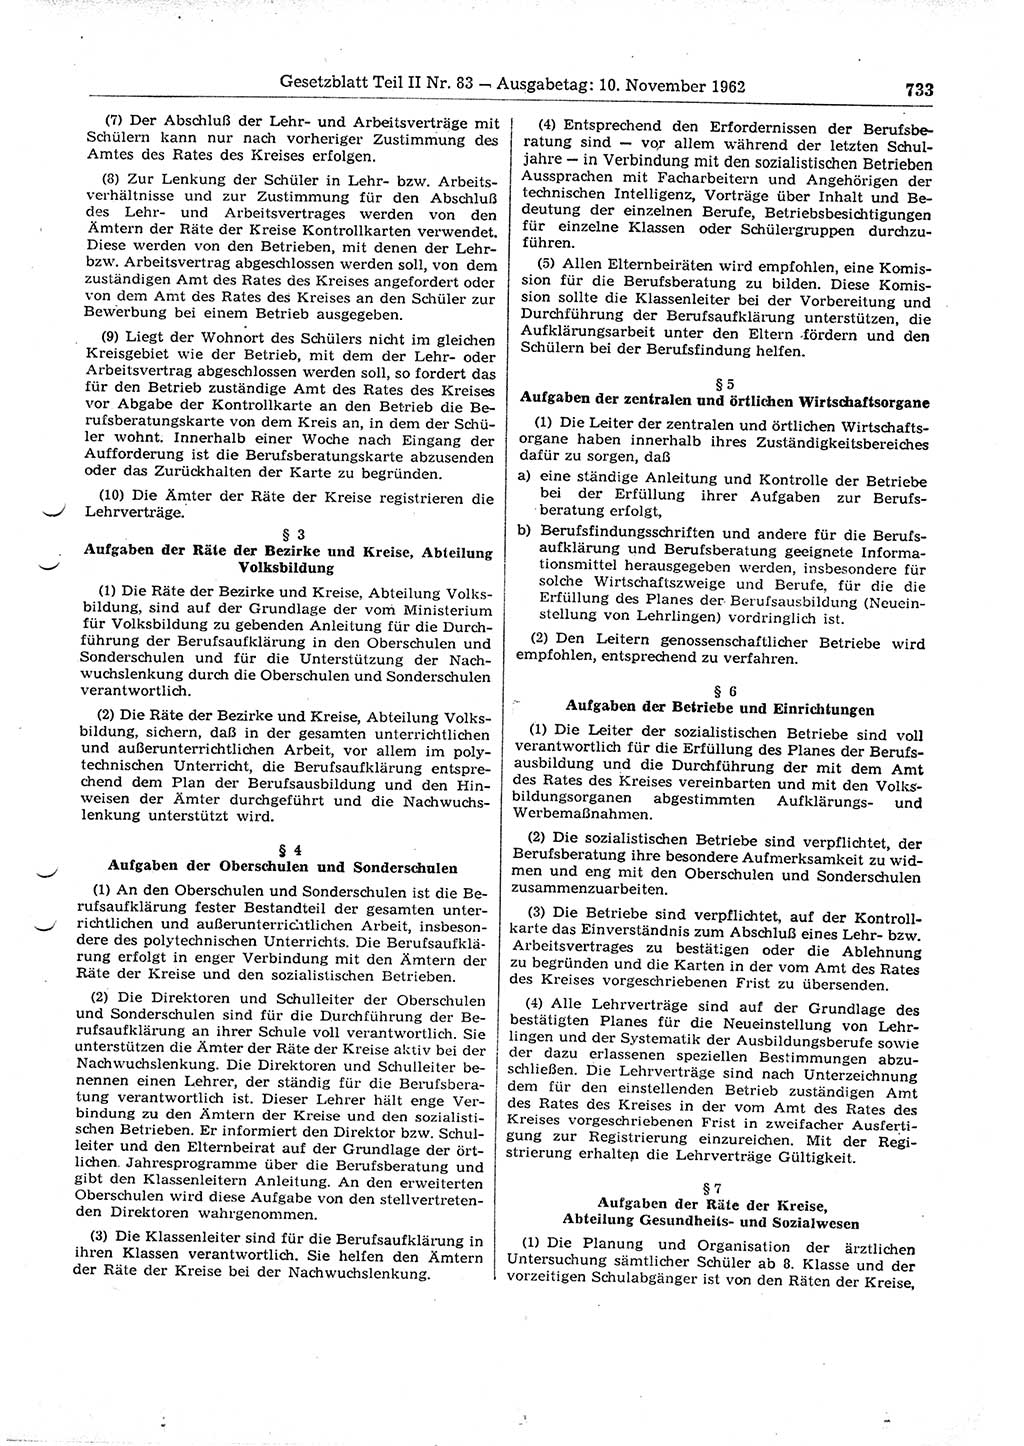 Gesetzblatt (GBl.) der Deutschen Demokratischen Republik (DDR) Teil ⅠⅠ 1962, Seite 733 (GBl. DDR ⅠⅠ 1962, S. 733)